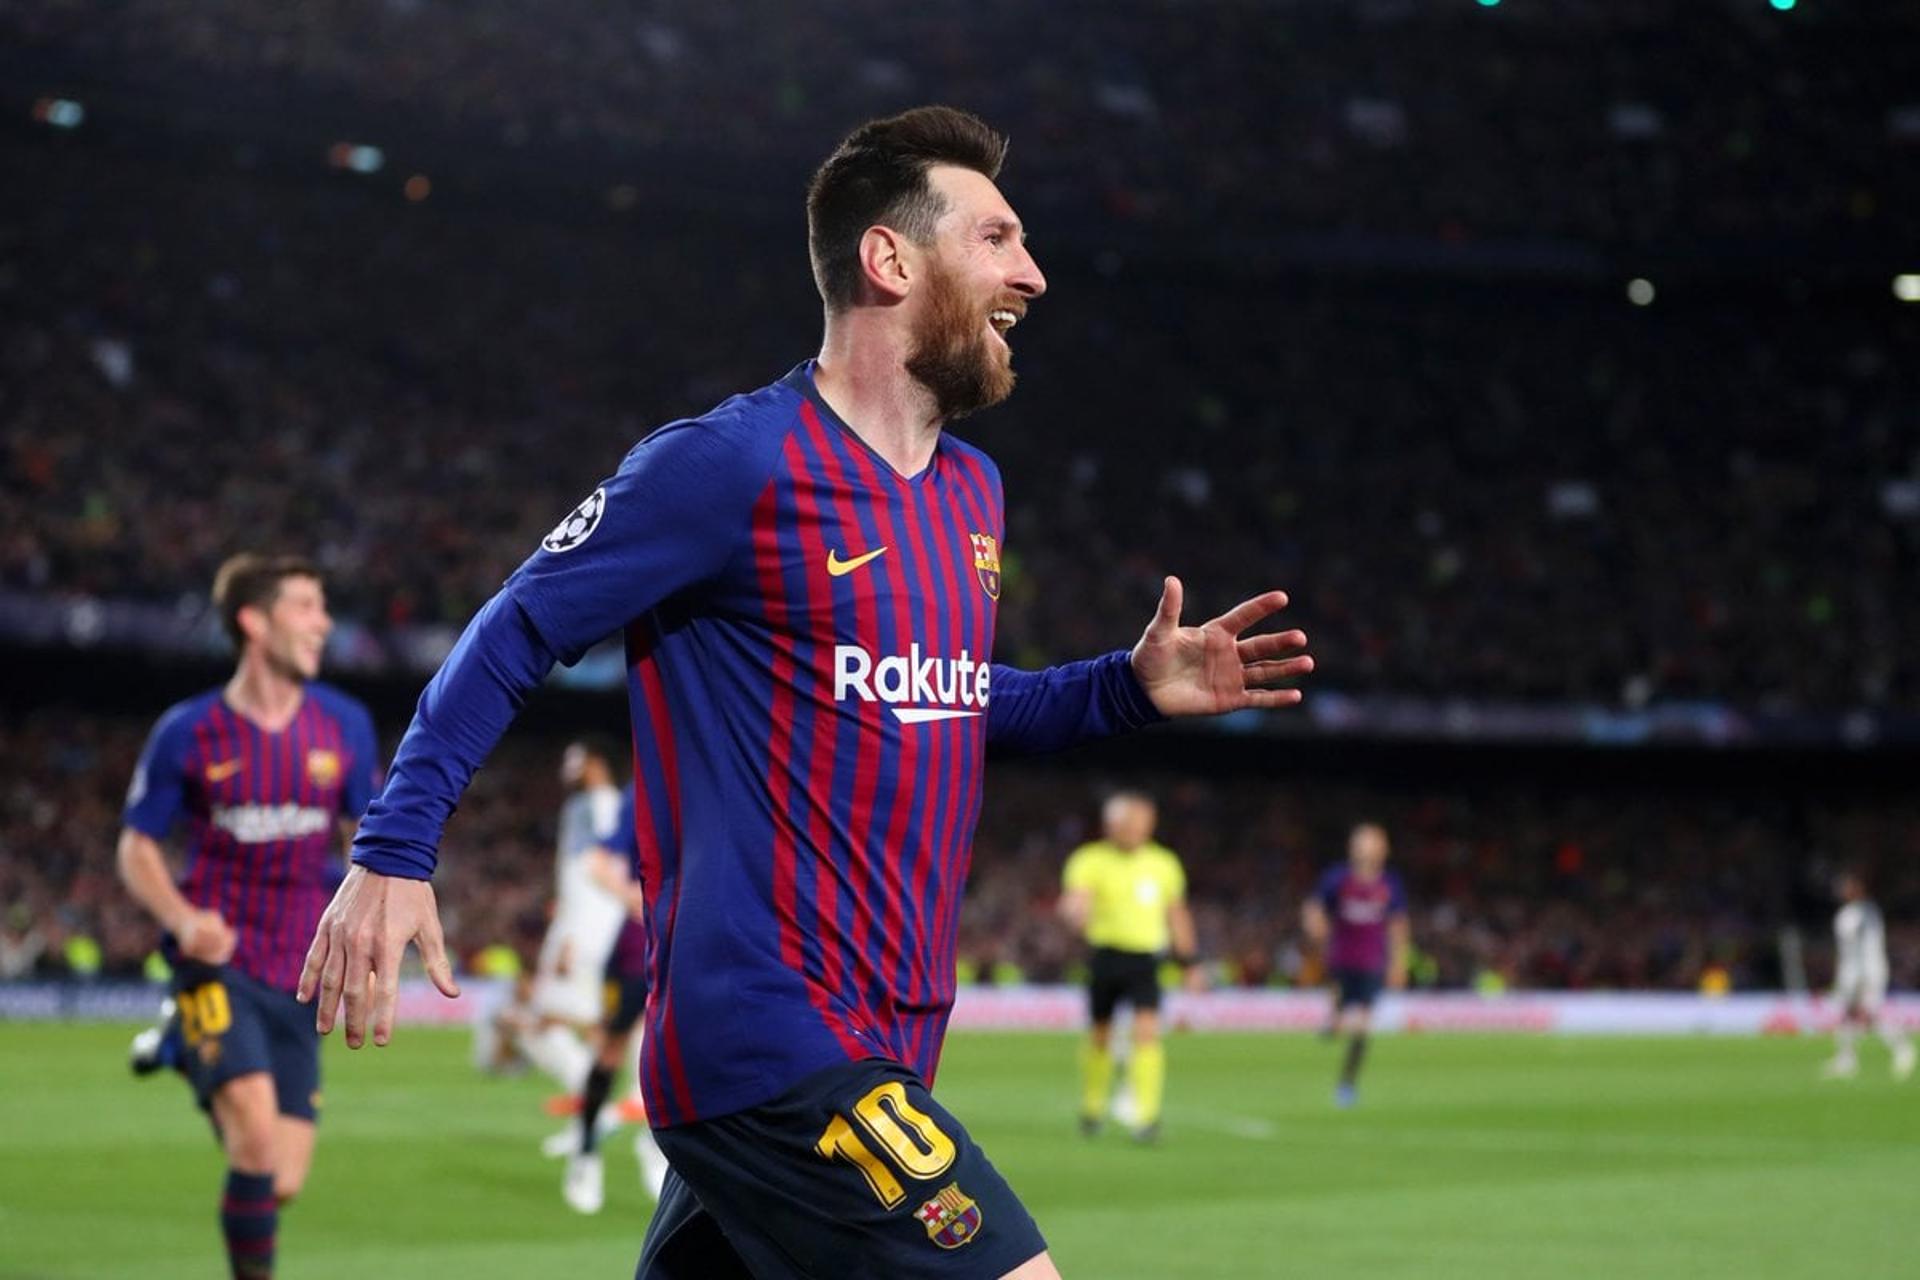 Messi chegou aos 600 gols com a camisa do Barça em seu centésimo jogo como capitão